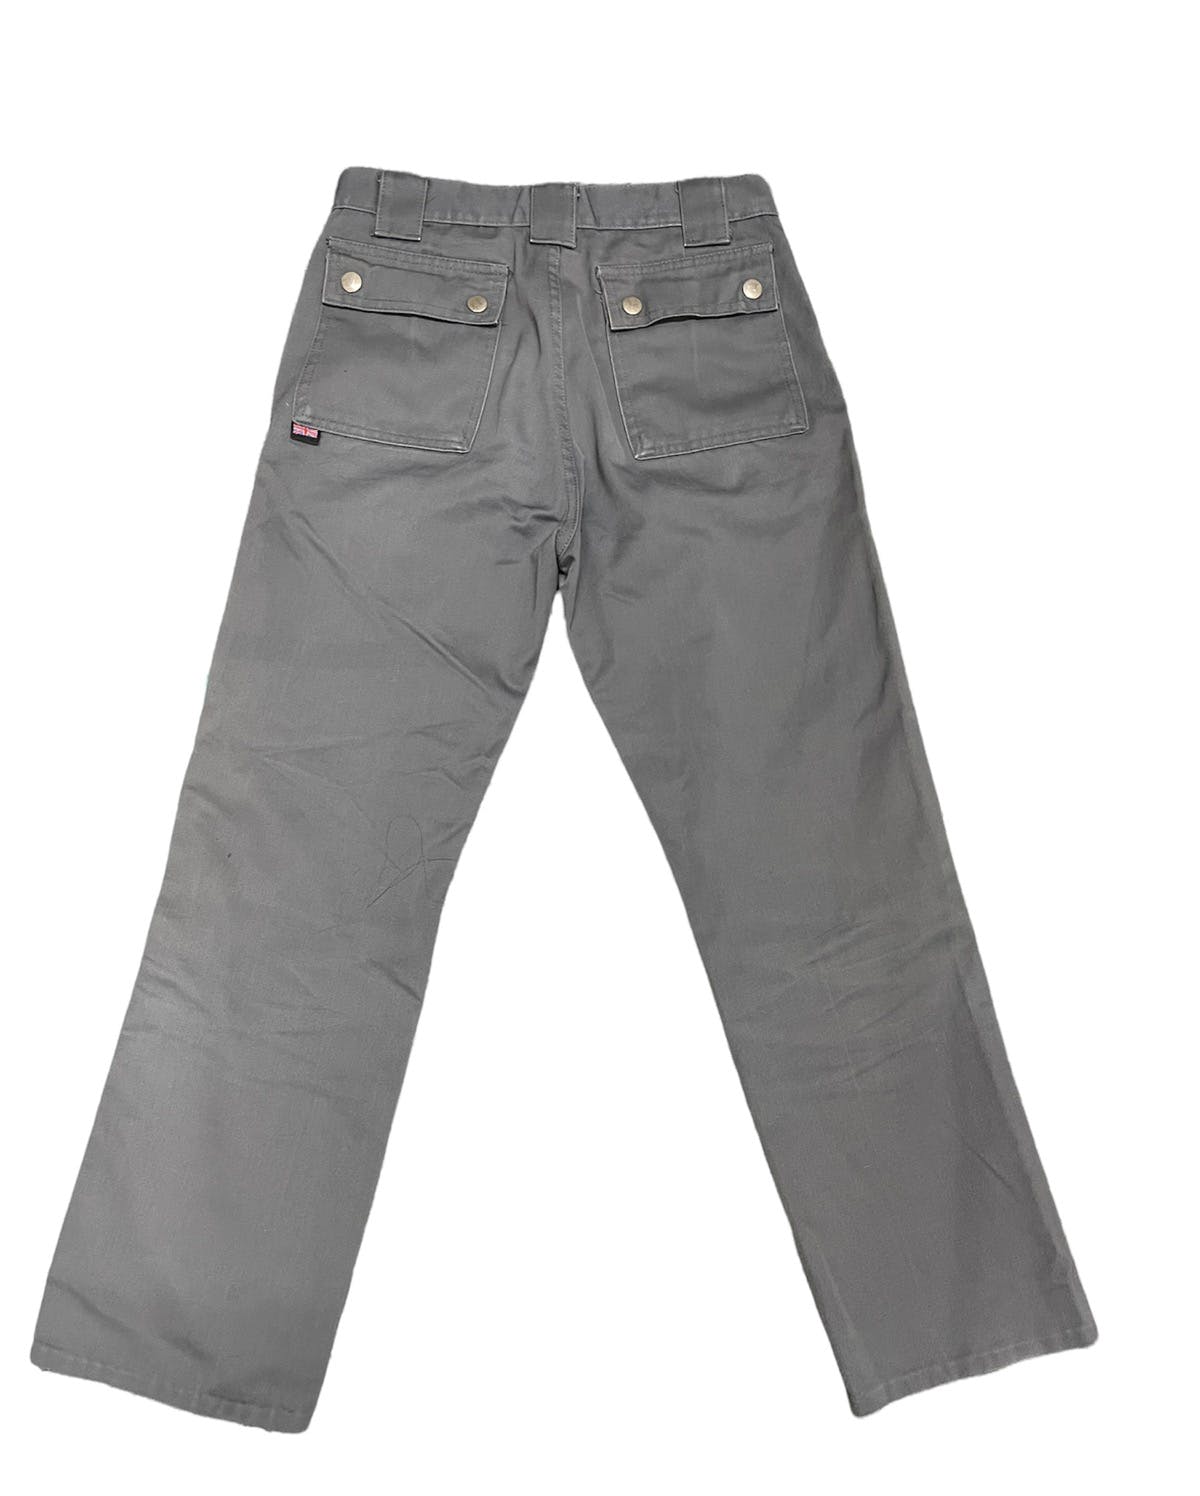 Belstaff cotton pants - 2